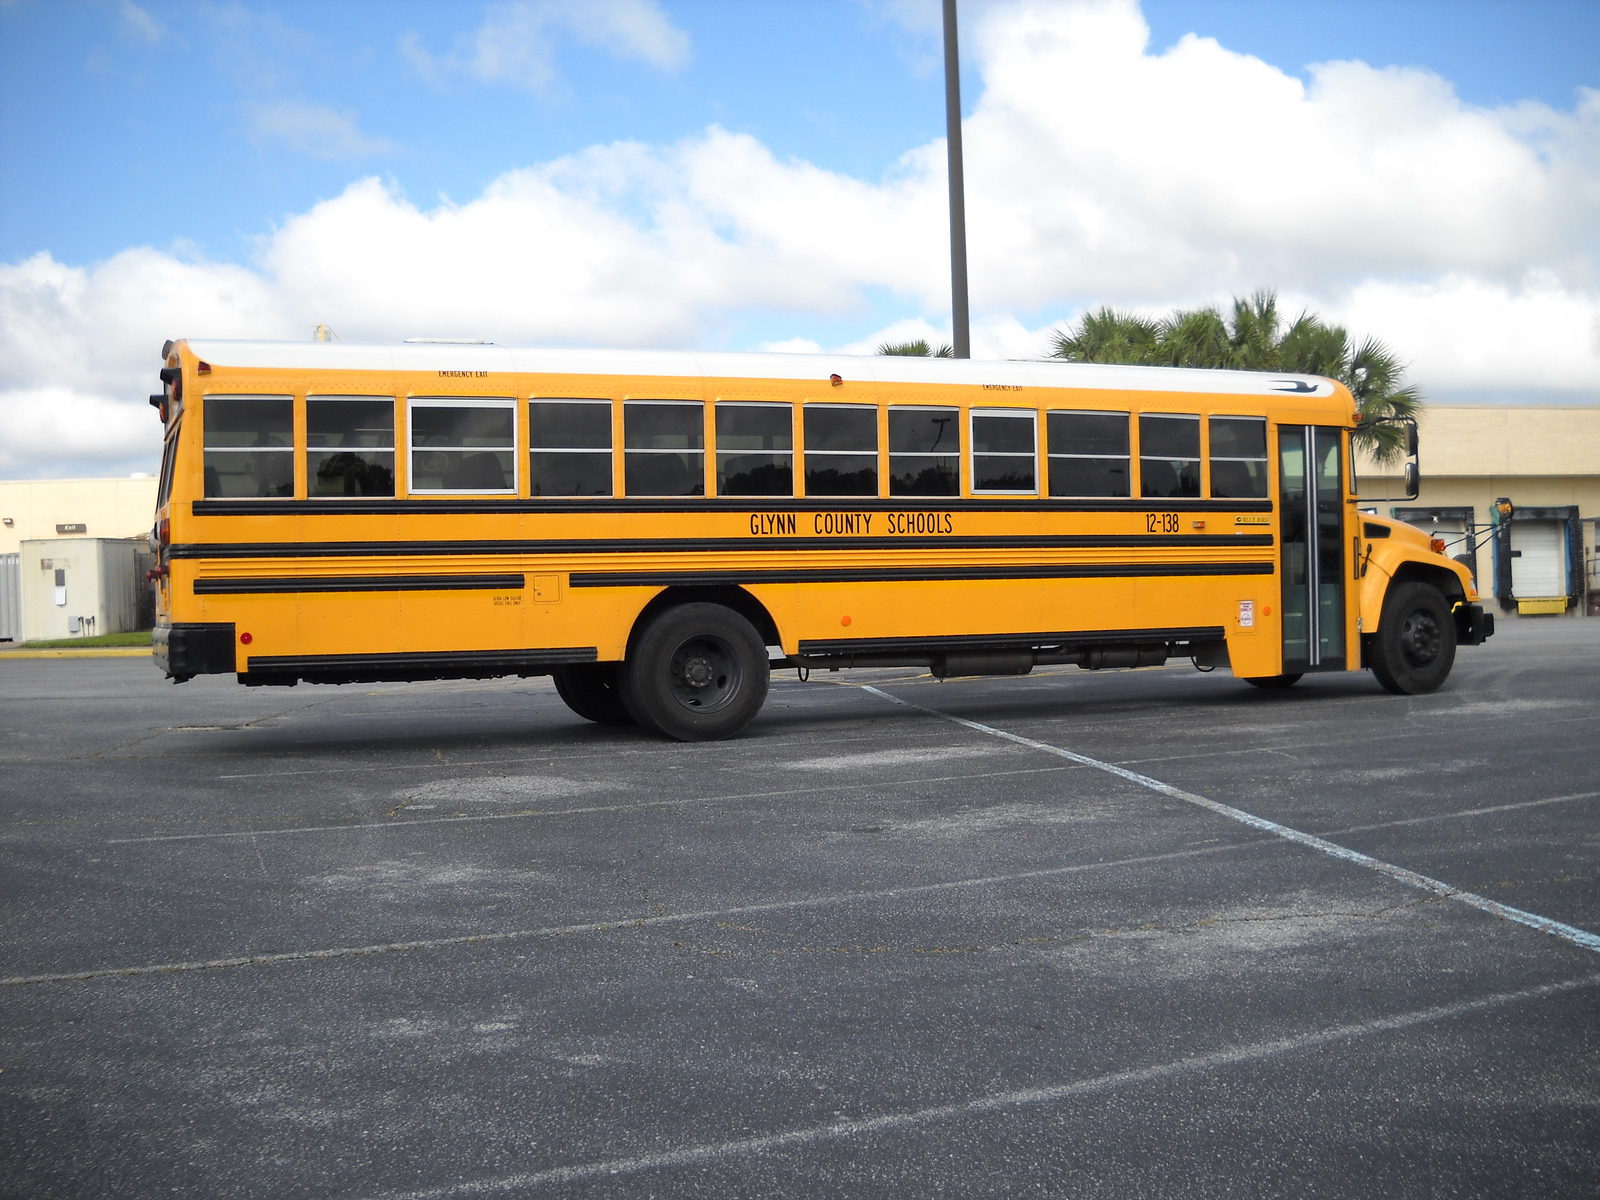 2012 Blue Bird Vision, Glynn Co. Schools, GA | Flickr - Photo Sharing!